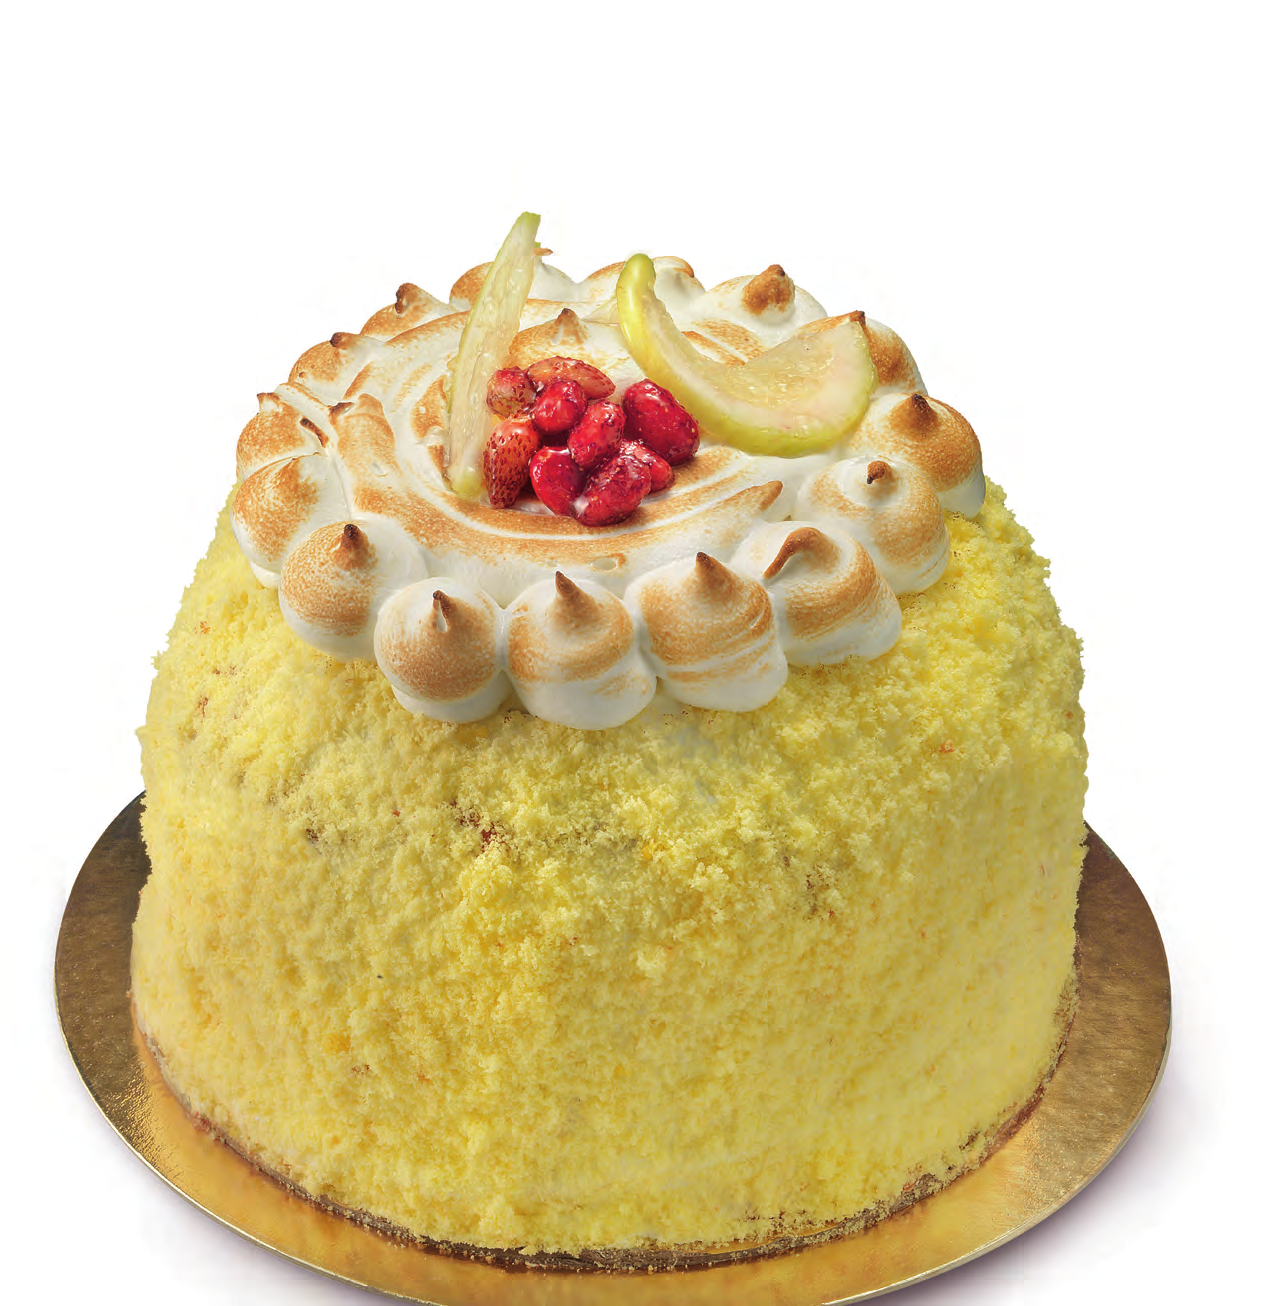 Profumo d Amalfi Panettone a lievitazione naturale (36 ore) con limoncello e crema di limone, decorato con un cappello di meringhe flambate e delicate fragoline.